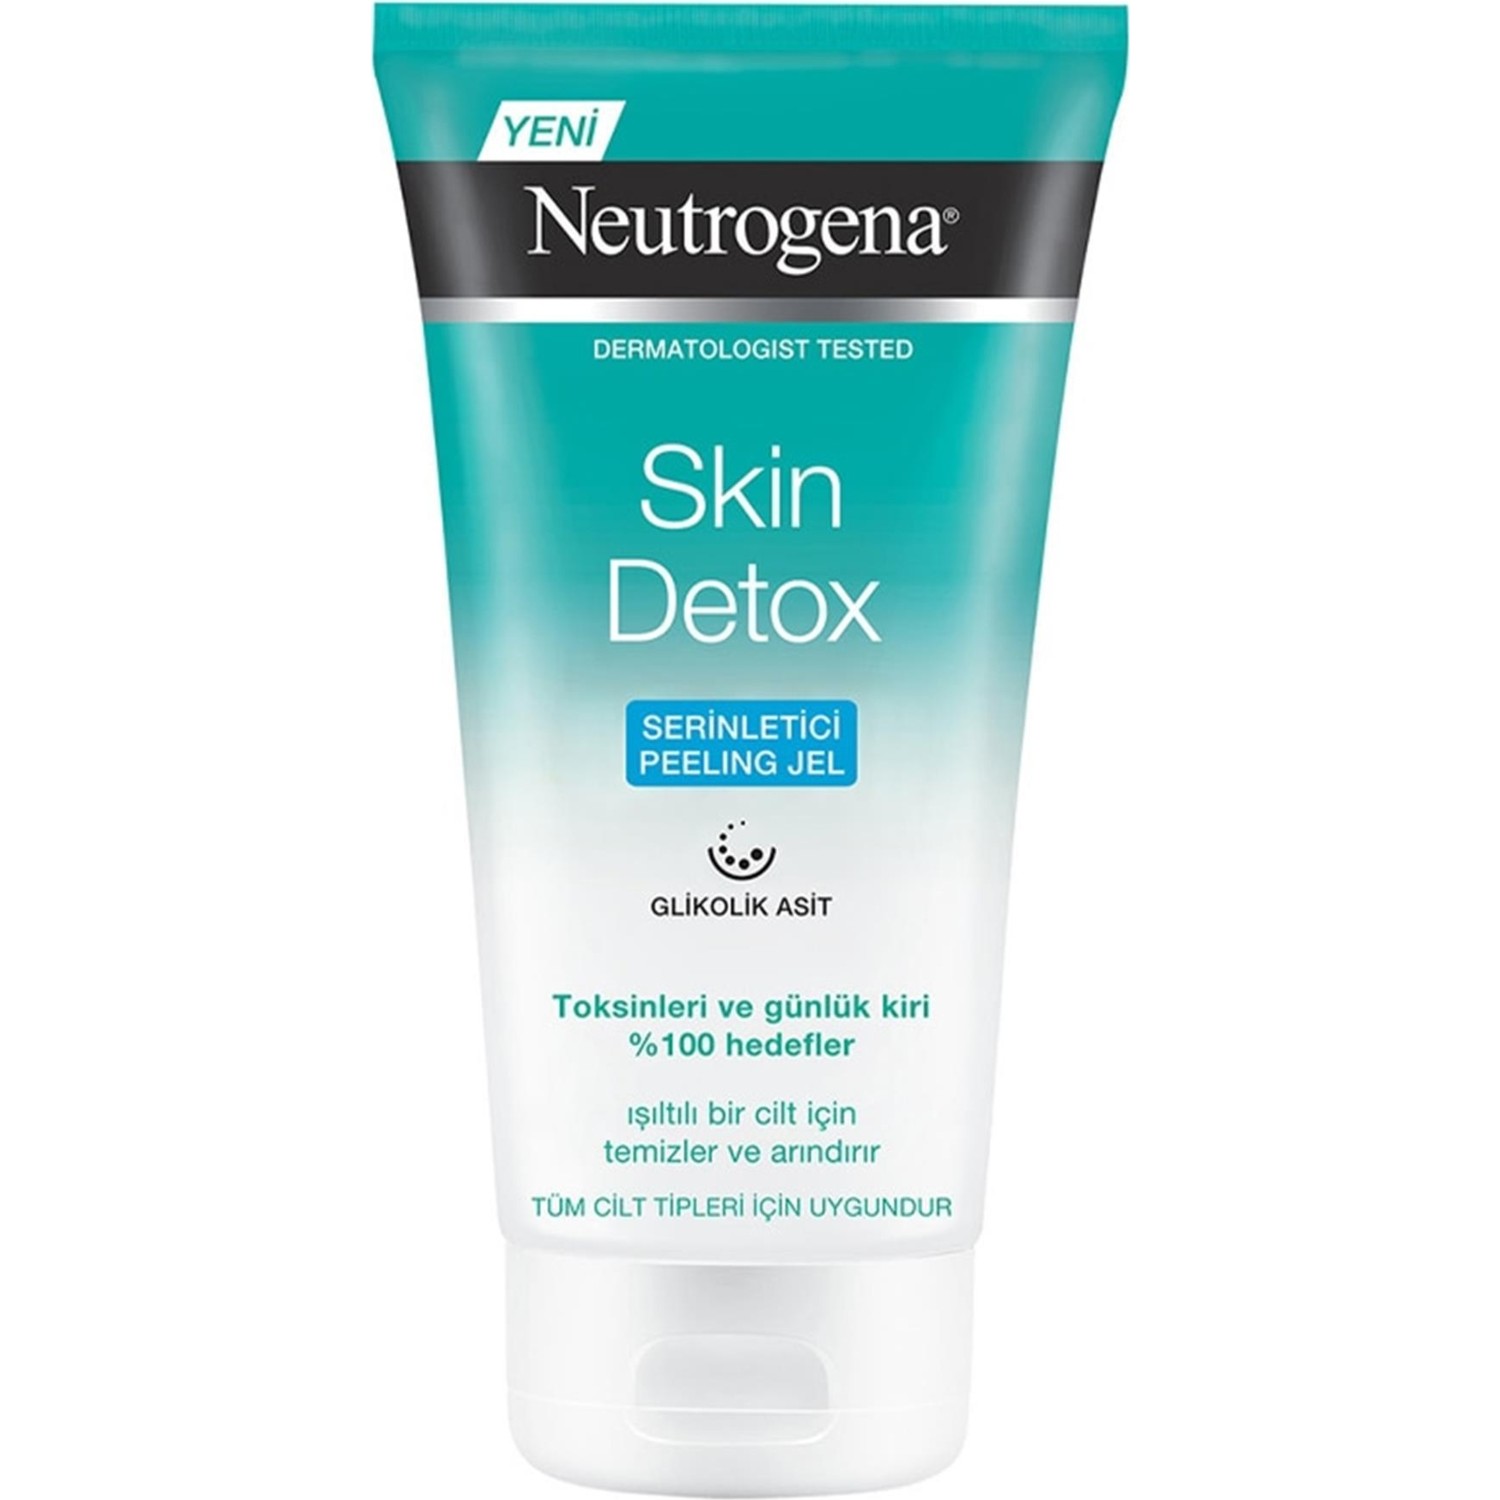 Освежающий гель-пилинг Neutrogena Skin Detox, 150 мл освежающий гель пилинг neutrogena skin detox 150 мл